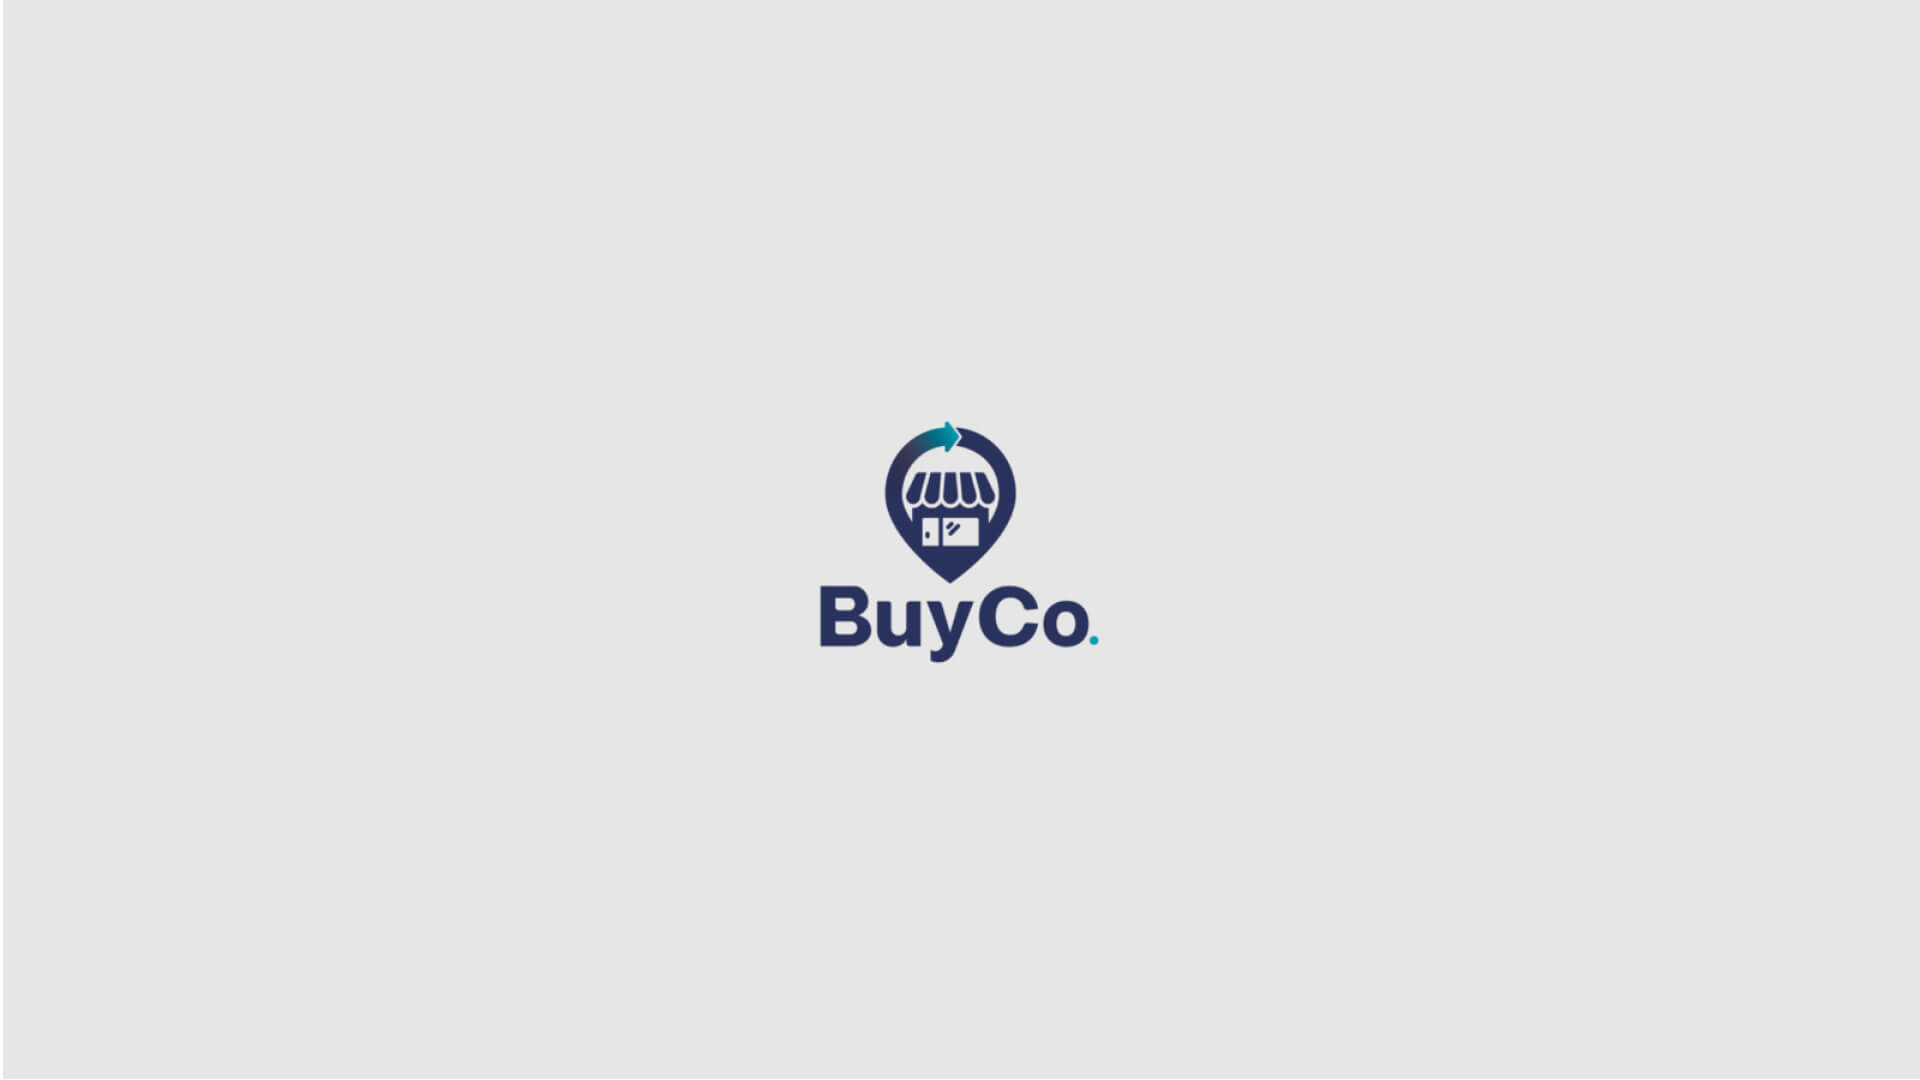 BuyCo. Ilustração de um mercado com a logo buyco logo abaixo.